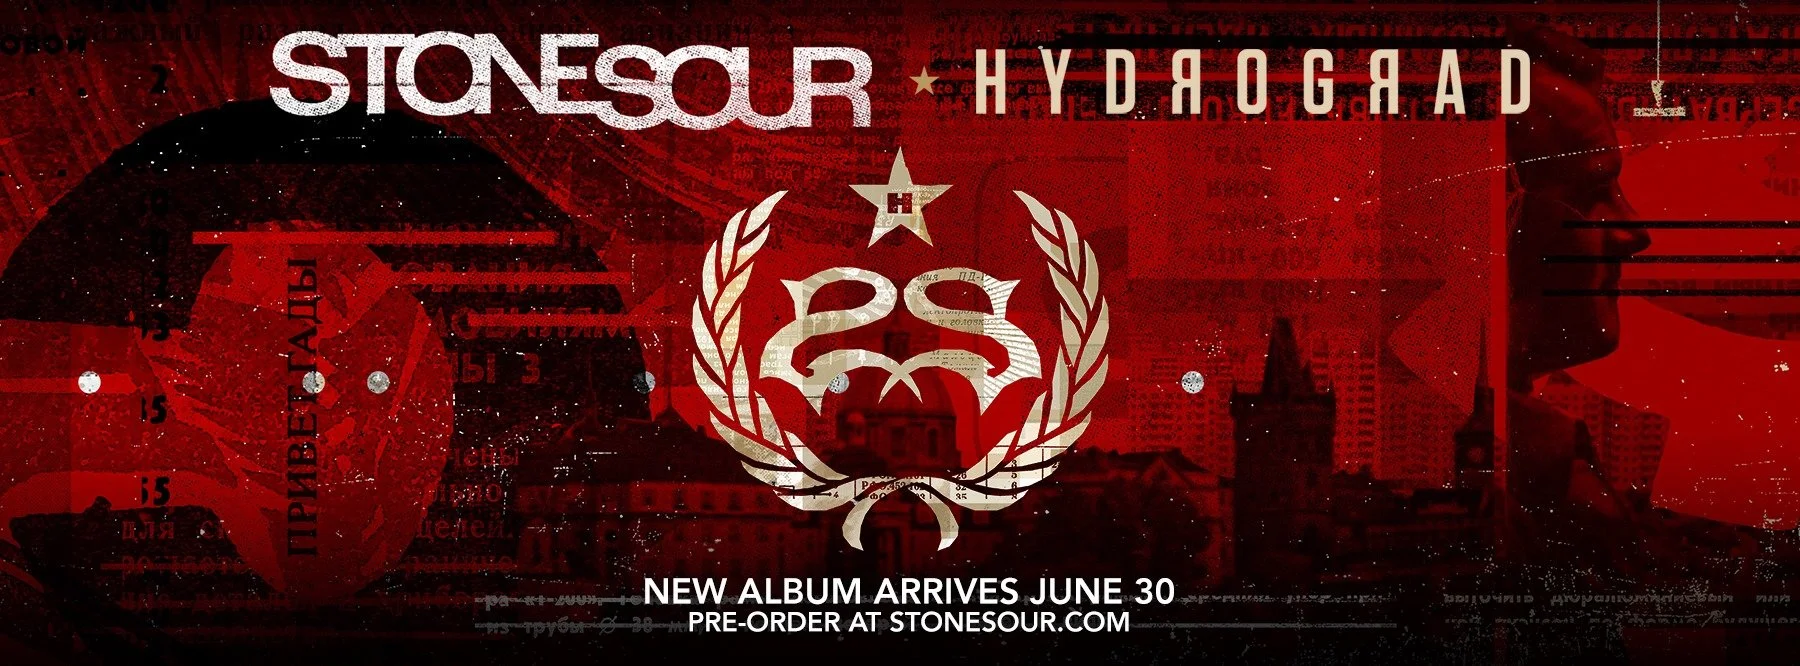 Критики сдержанно хвалят Hydrograd, новый альбом группы Stone Sour - фото 1